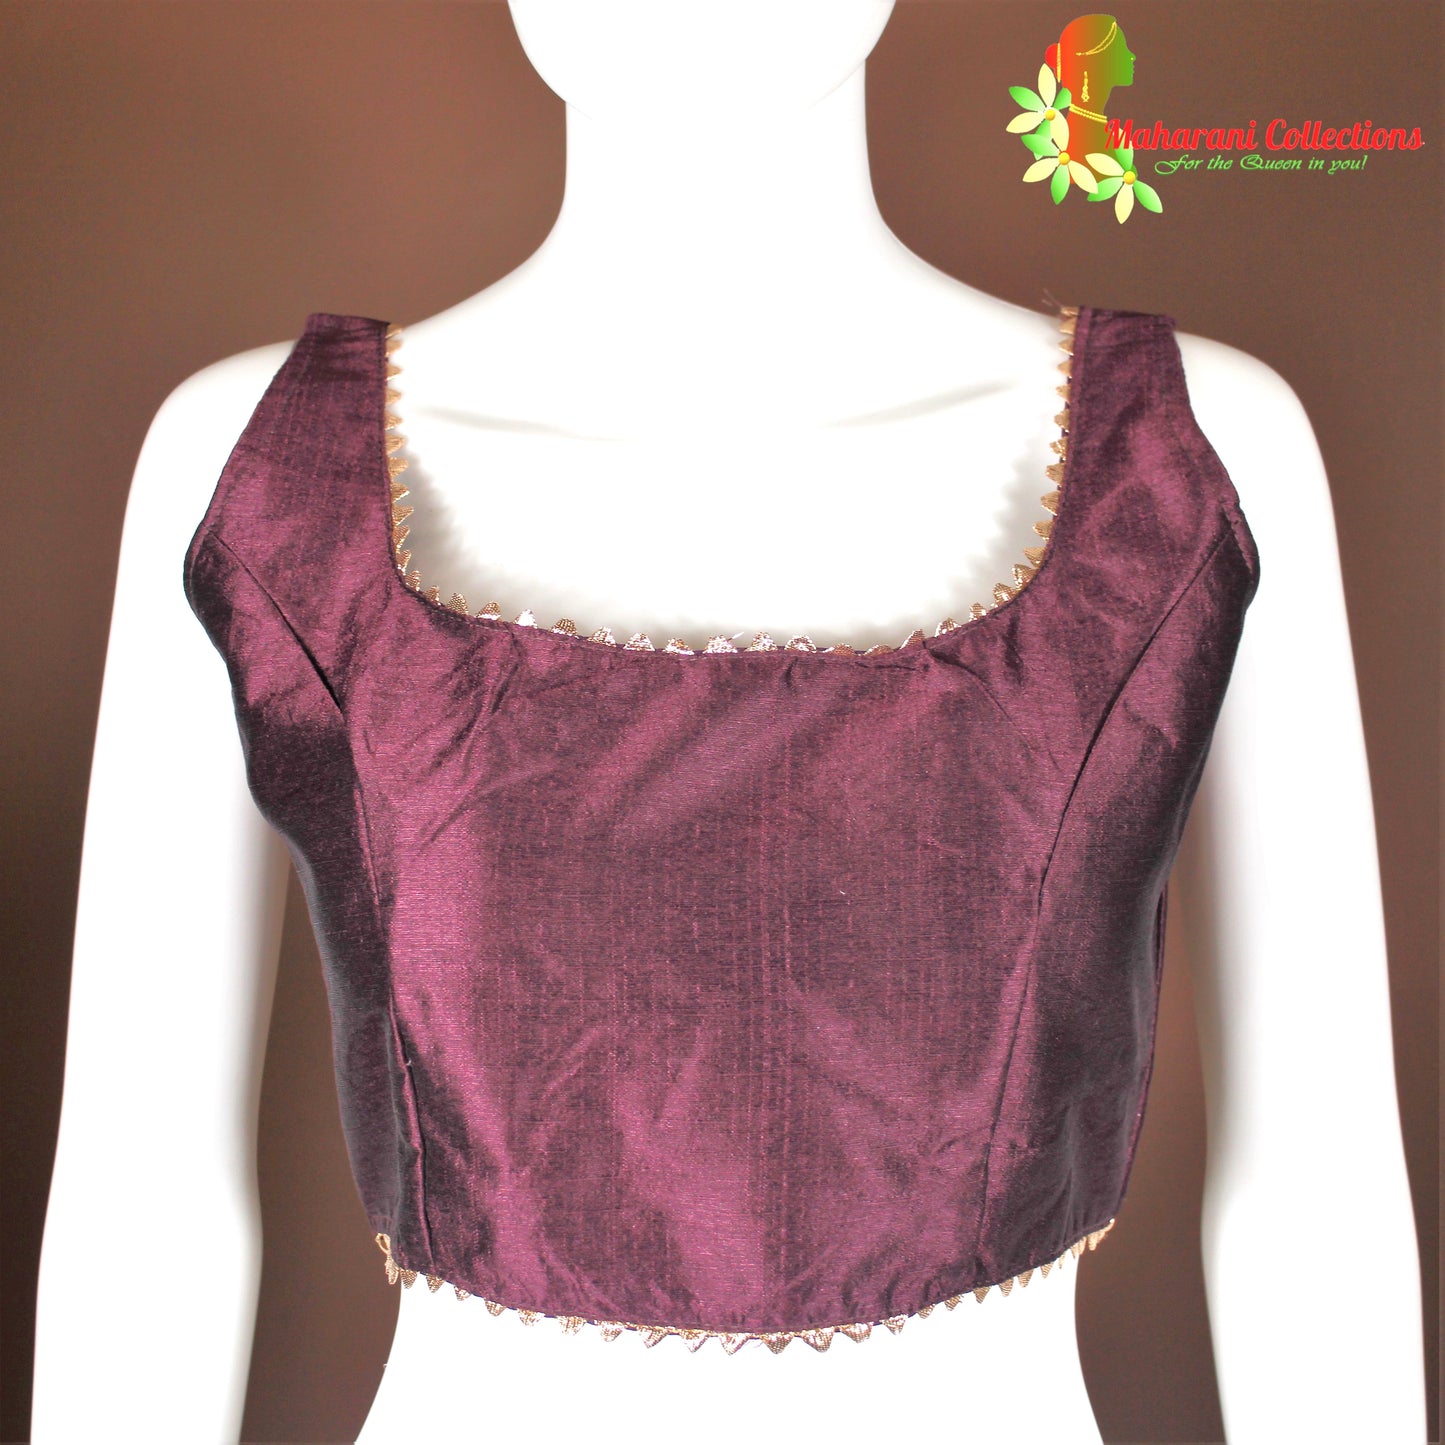 Maharani's Pure Banarasi Jamdani Silk Saree - Purple (with stitched blouse and petticoat)